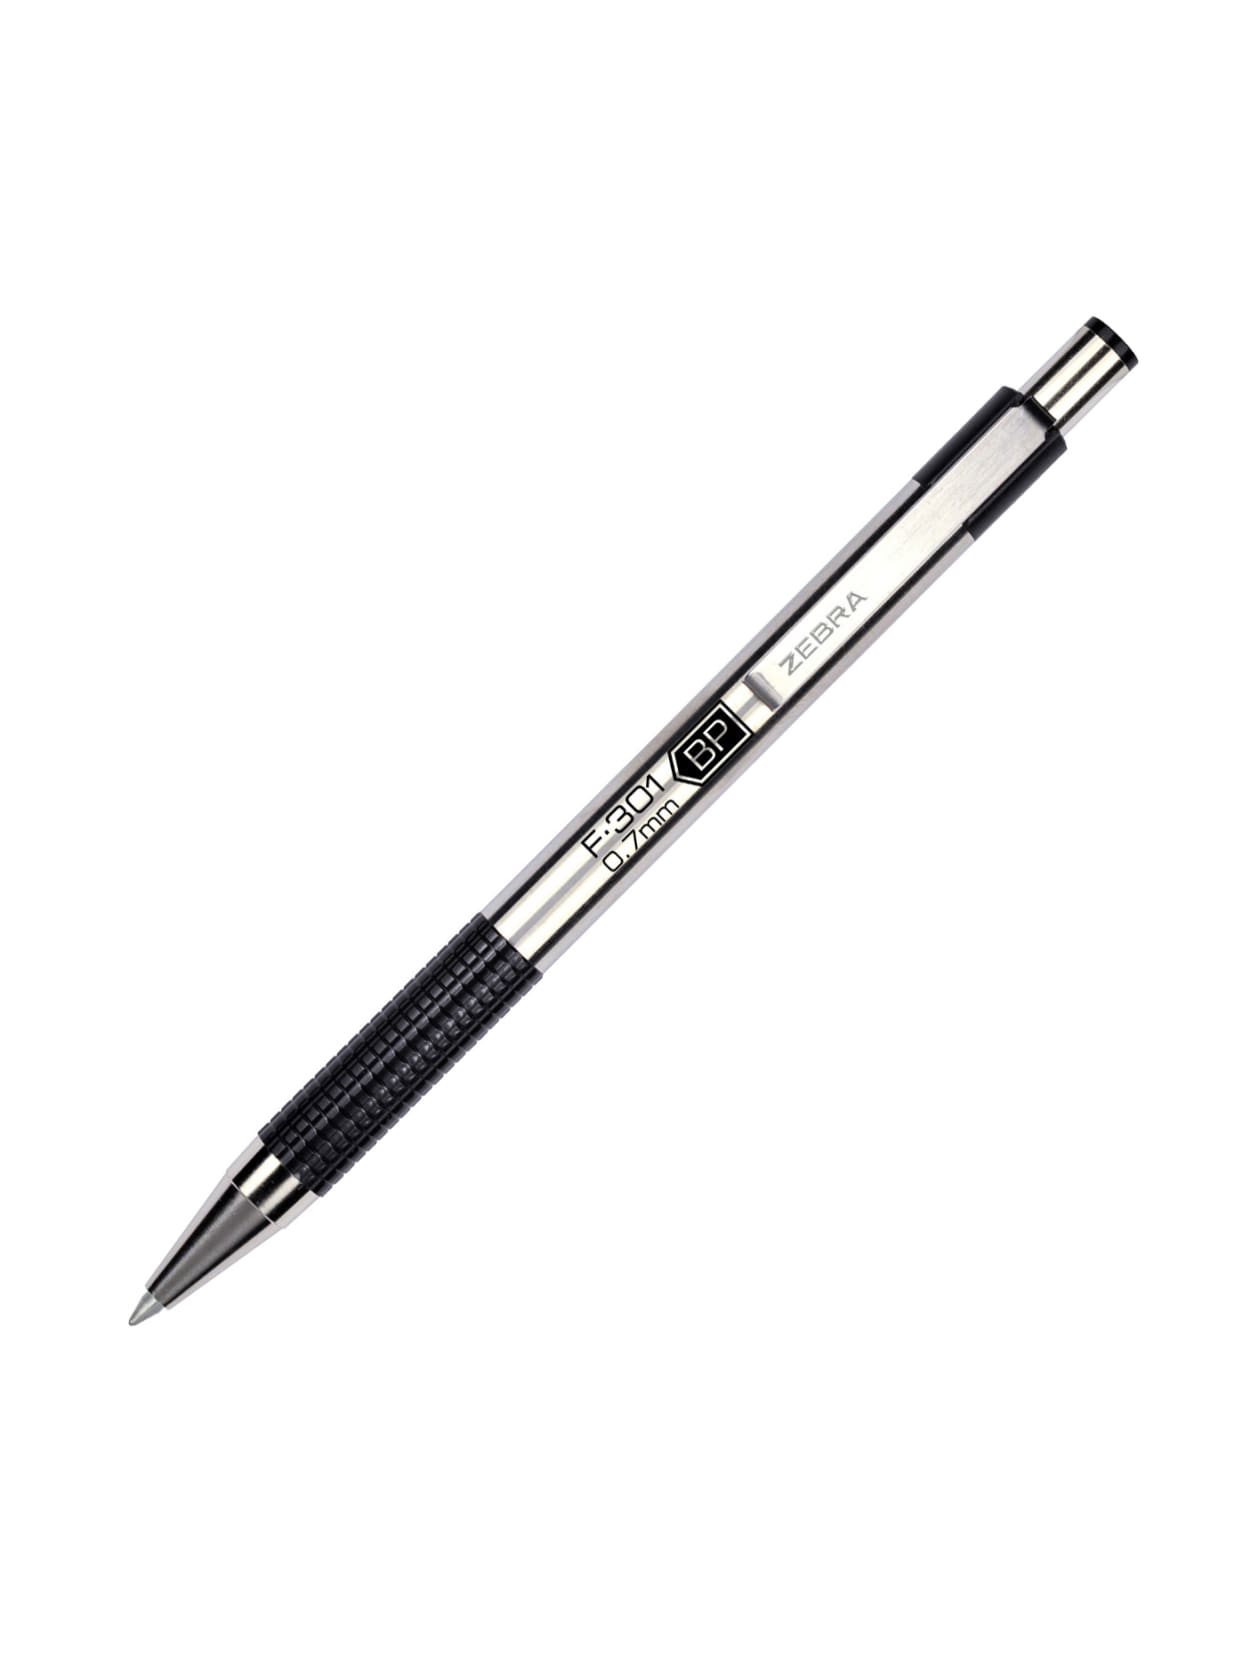 Zebra F-301 Stainless Steel Deluxe Retractable Ballpoint Pen Black Ink 1.0mm